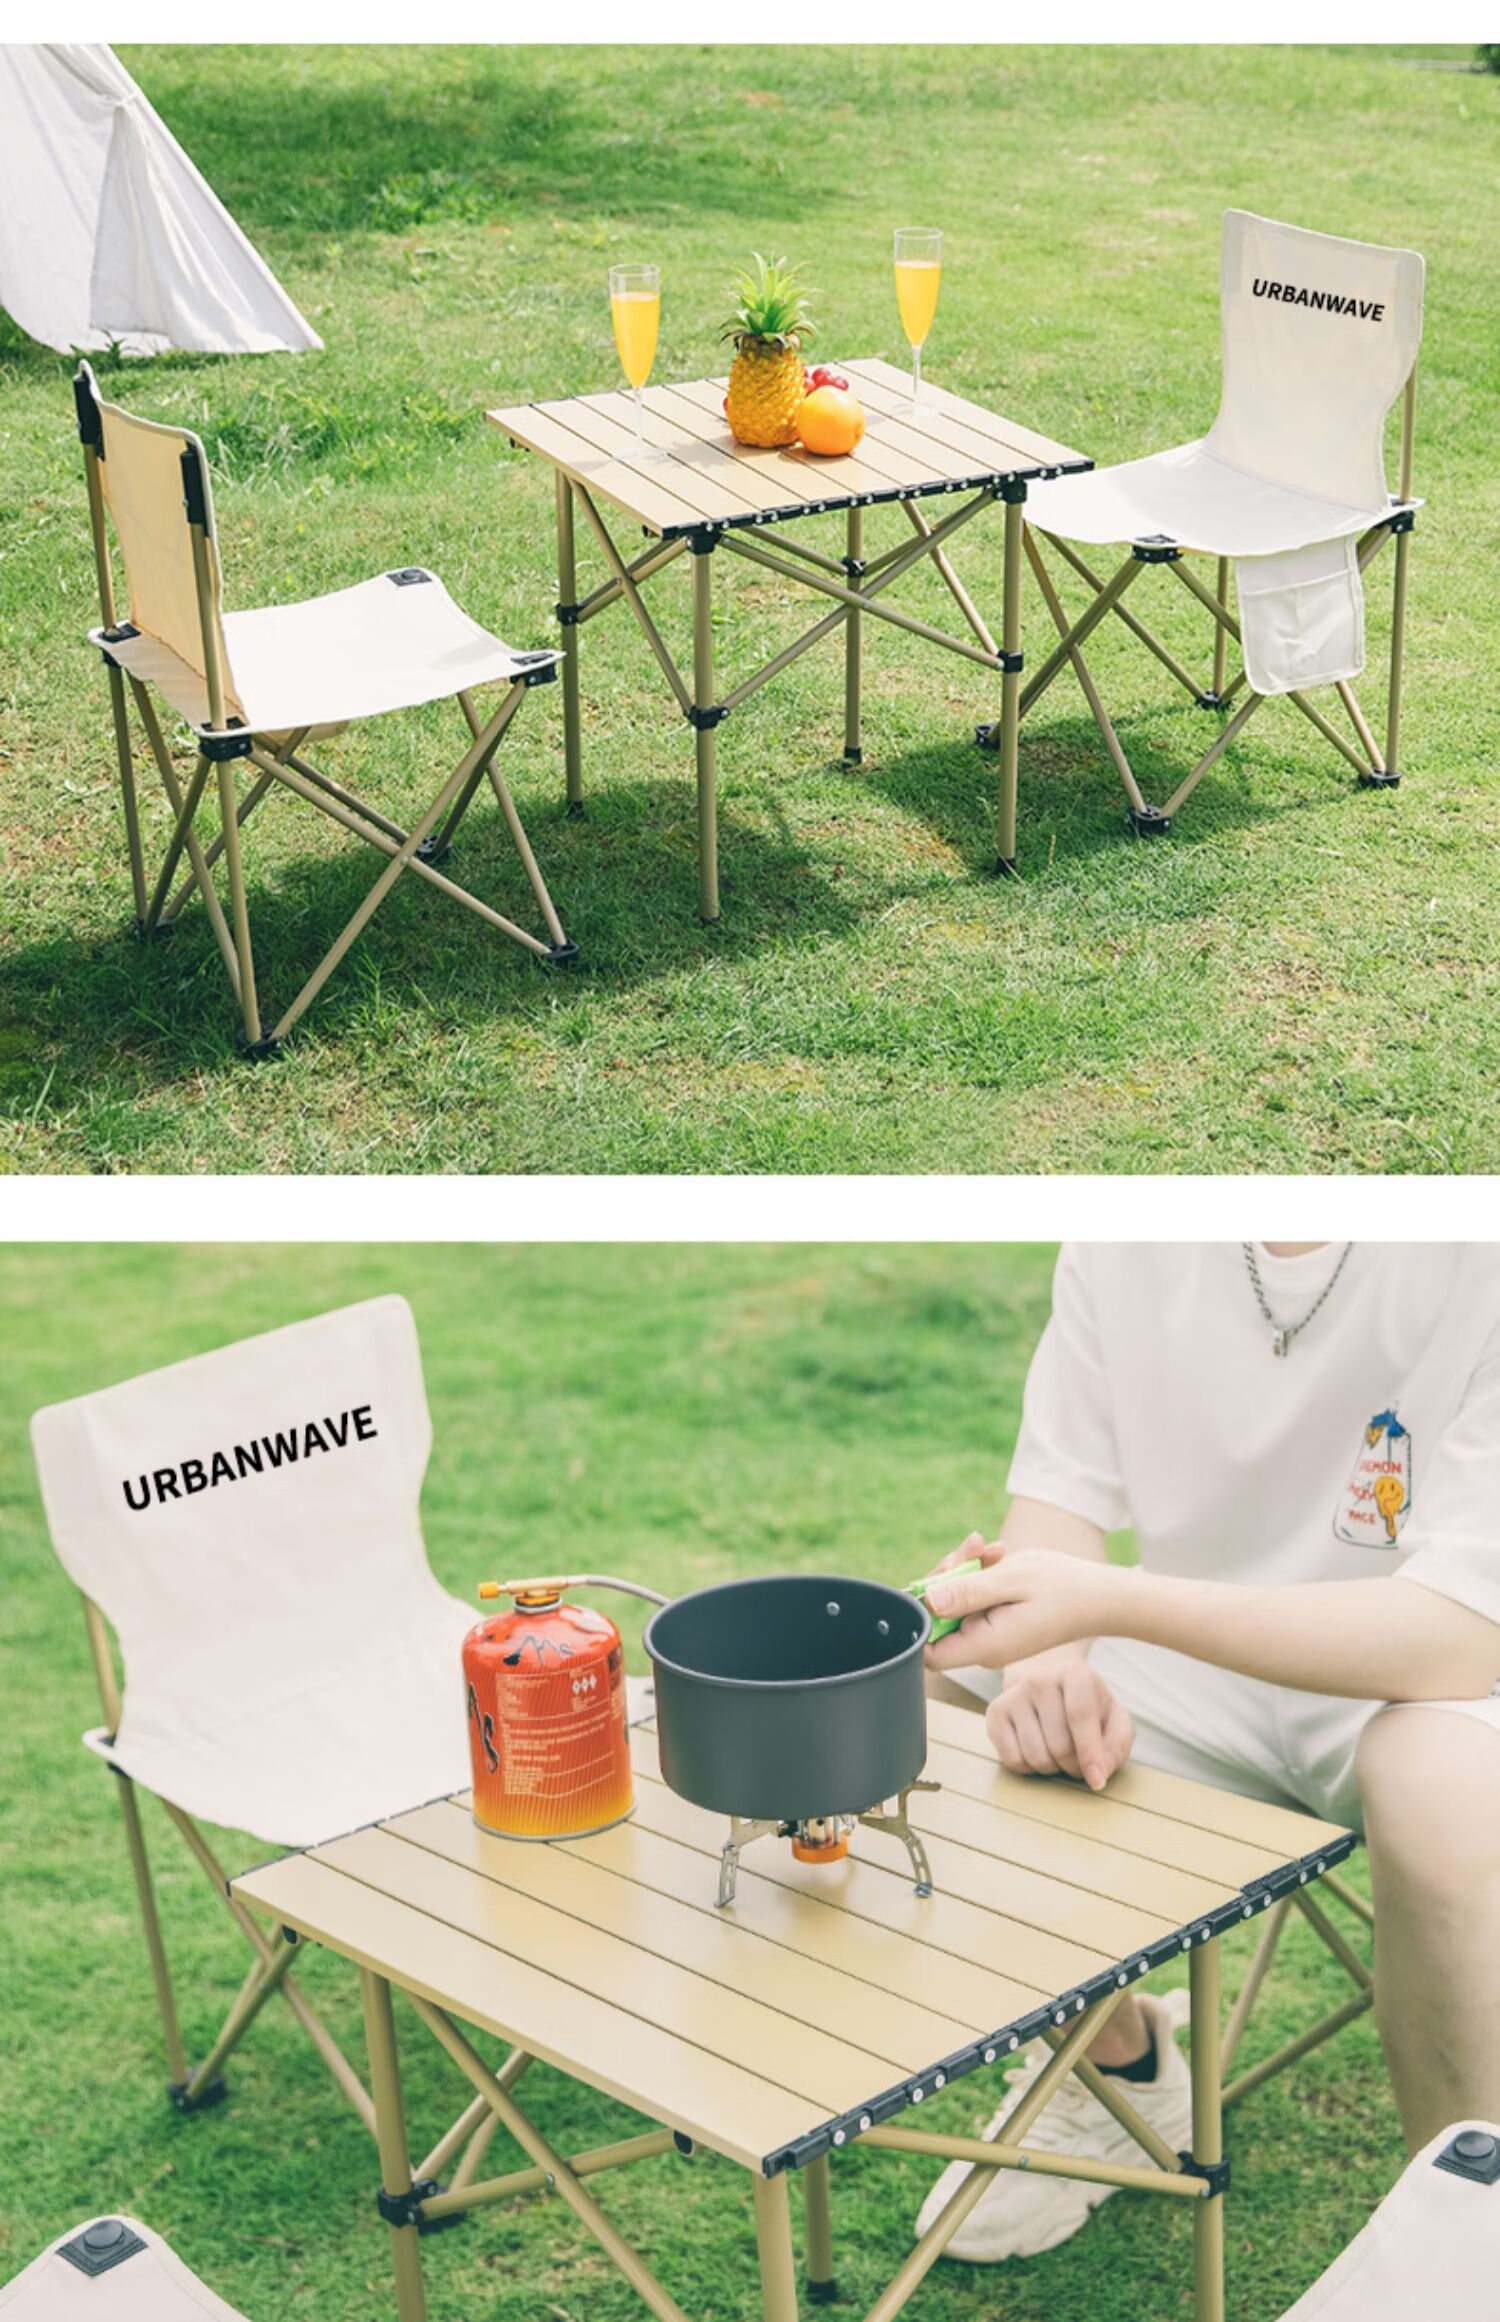 德国进口户外折叠桌椅便携式铝合金蛋卷桌子套装野餐桌烧烤装备露营